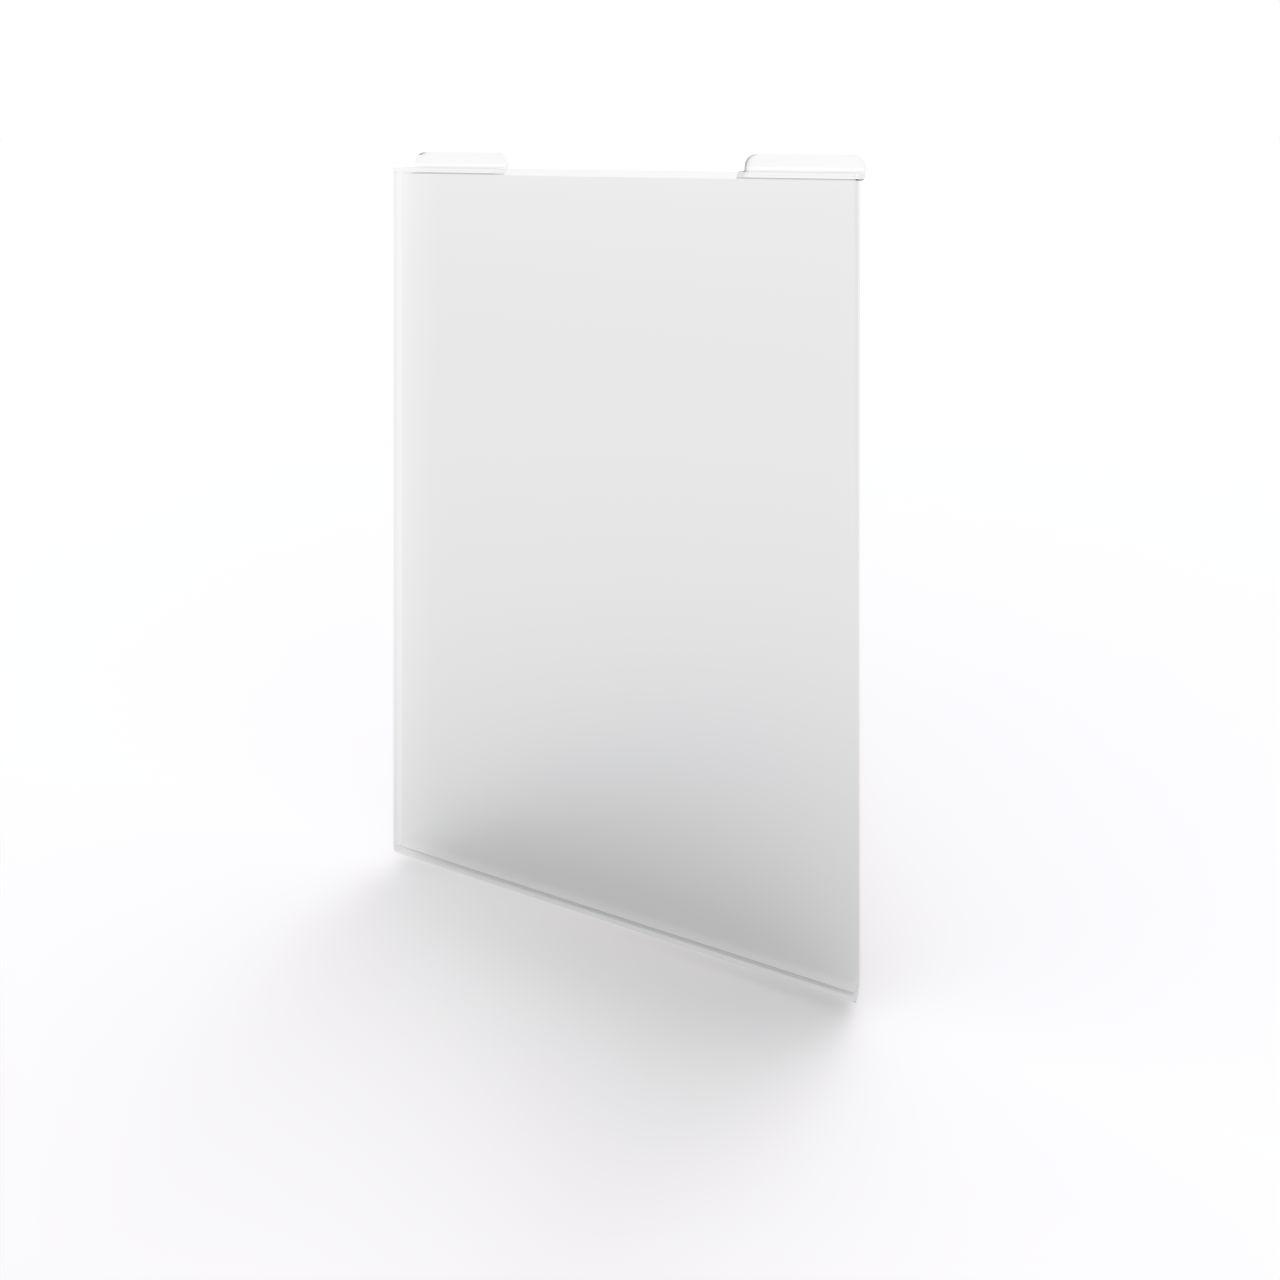 Acryldisplay Plakathalter DIN A4; zum Einhängen in Präsentationsschiene  Breite: 216 mm Höhe: 320 mm  Kunststoff, glasklar